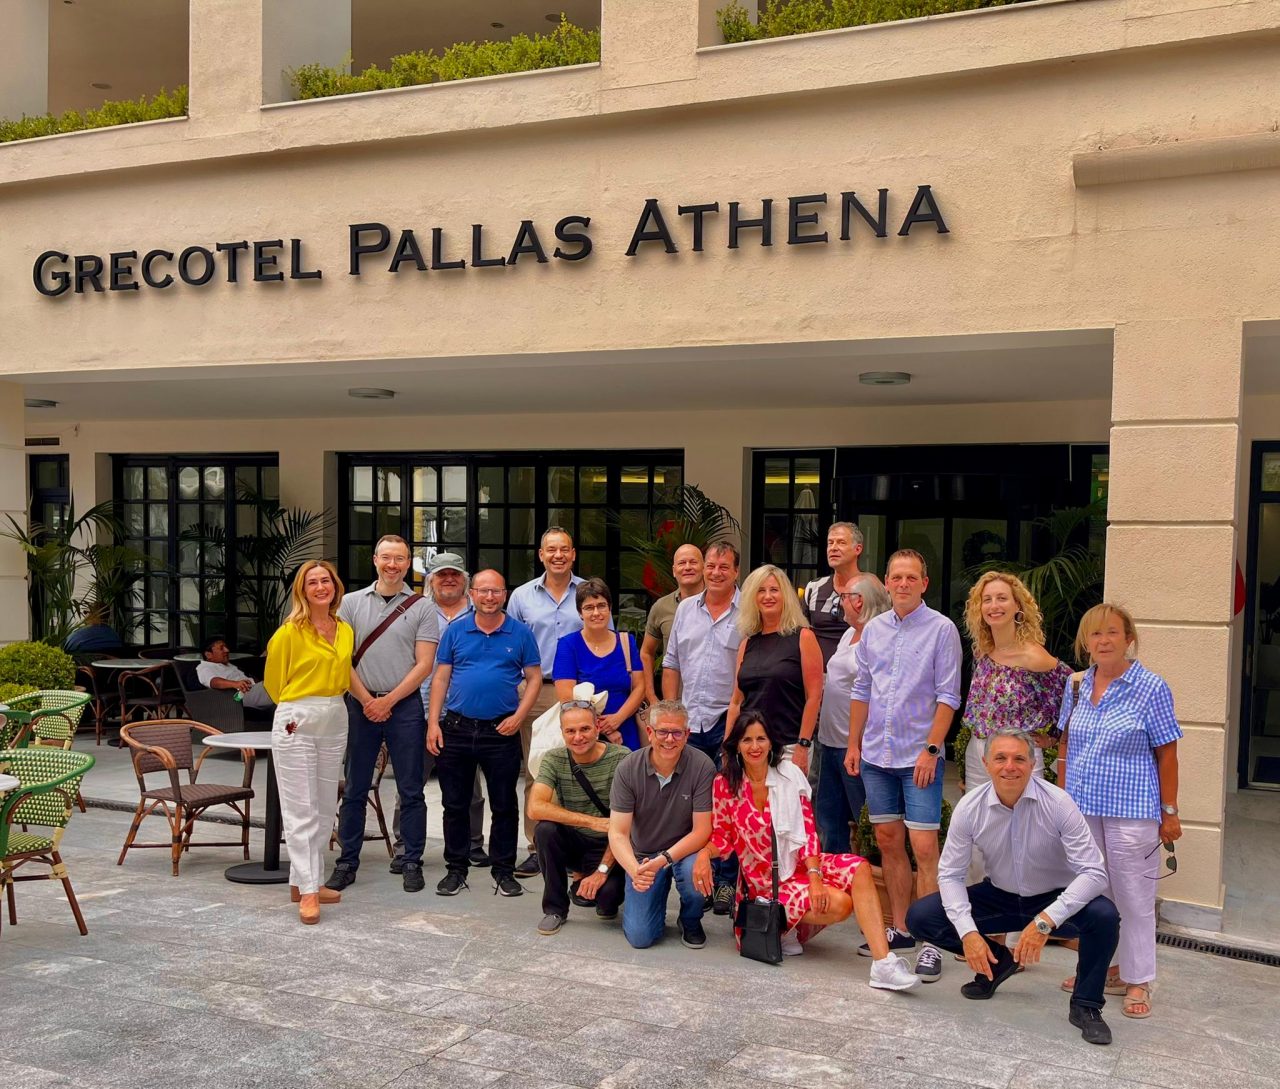 Επικεφαλής της TUI Ελβετίας και εκπρόσωποι κορυφαίων ελβετικών τουριστικών πρακτορείων με στελέχη της Grecotel σε ξενοδοχεία του Ομίλου στην Αθήνα και την Κέρκυρα, στο πλαίσιο του ταξιδιού εξοικείωσης που πραγματοποιήθηκε πρόσφατα